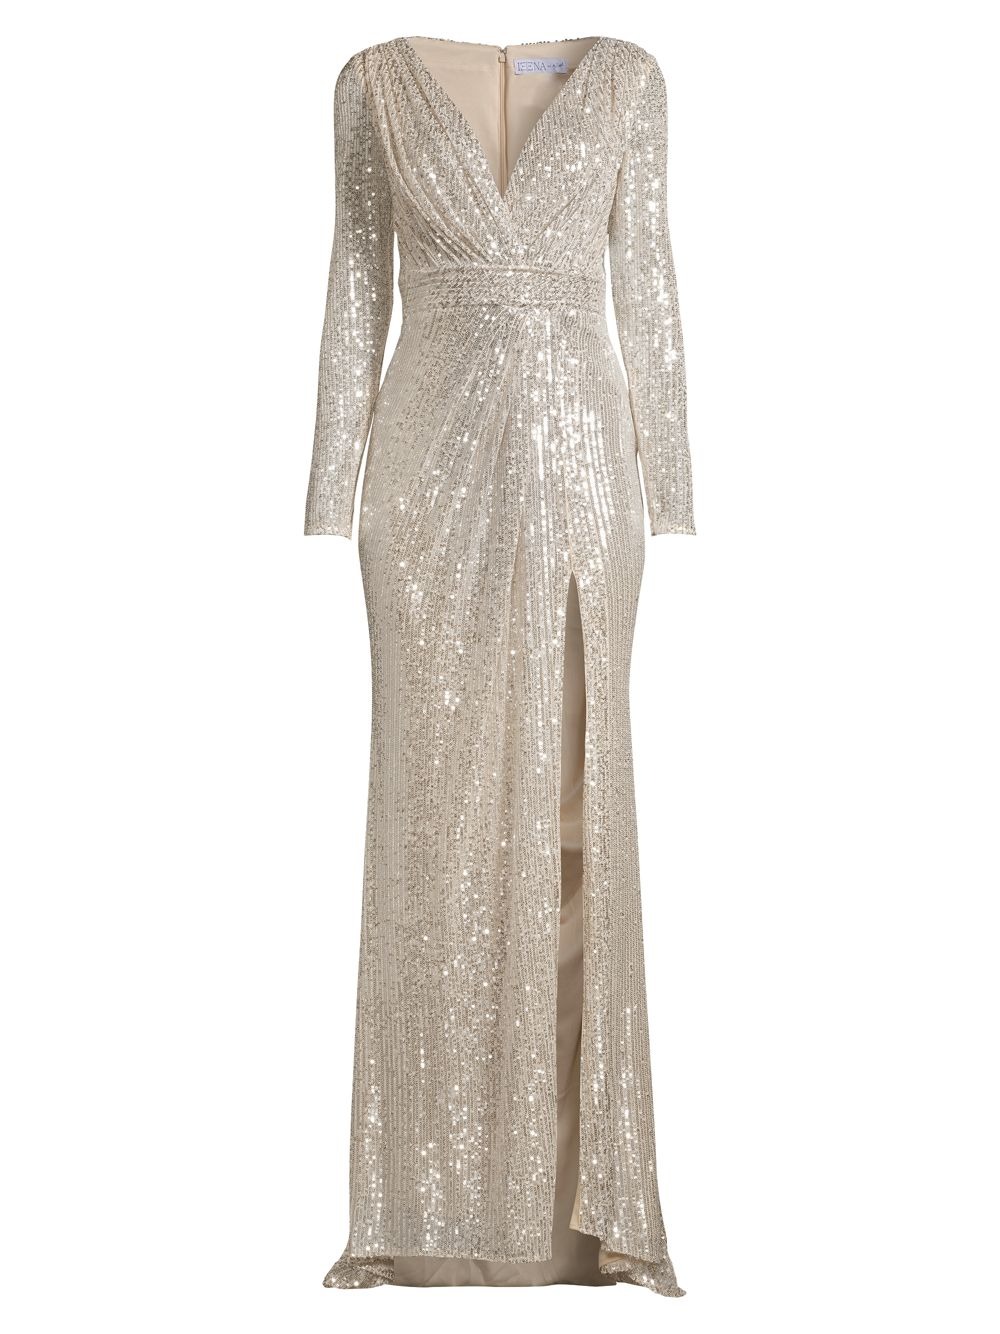 Вечернее платье с блестками Mac Duggal, серебряный (Размер US 10) цена и фото